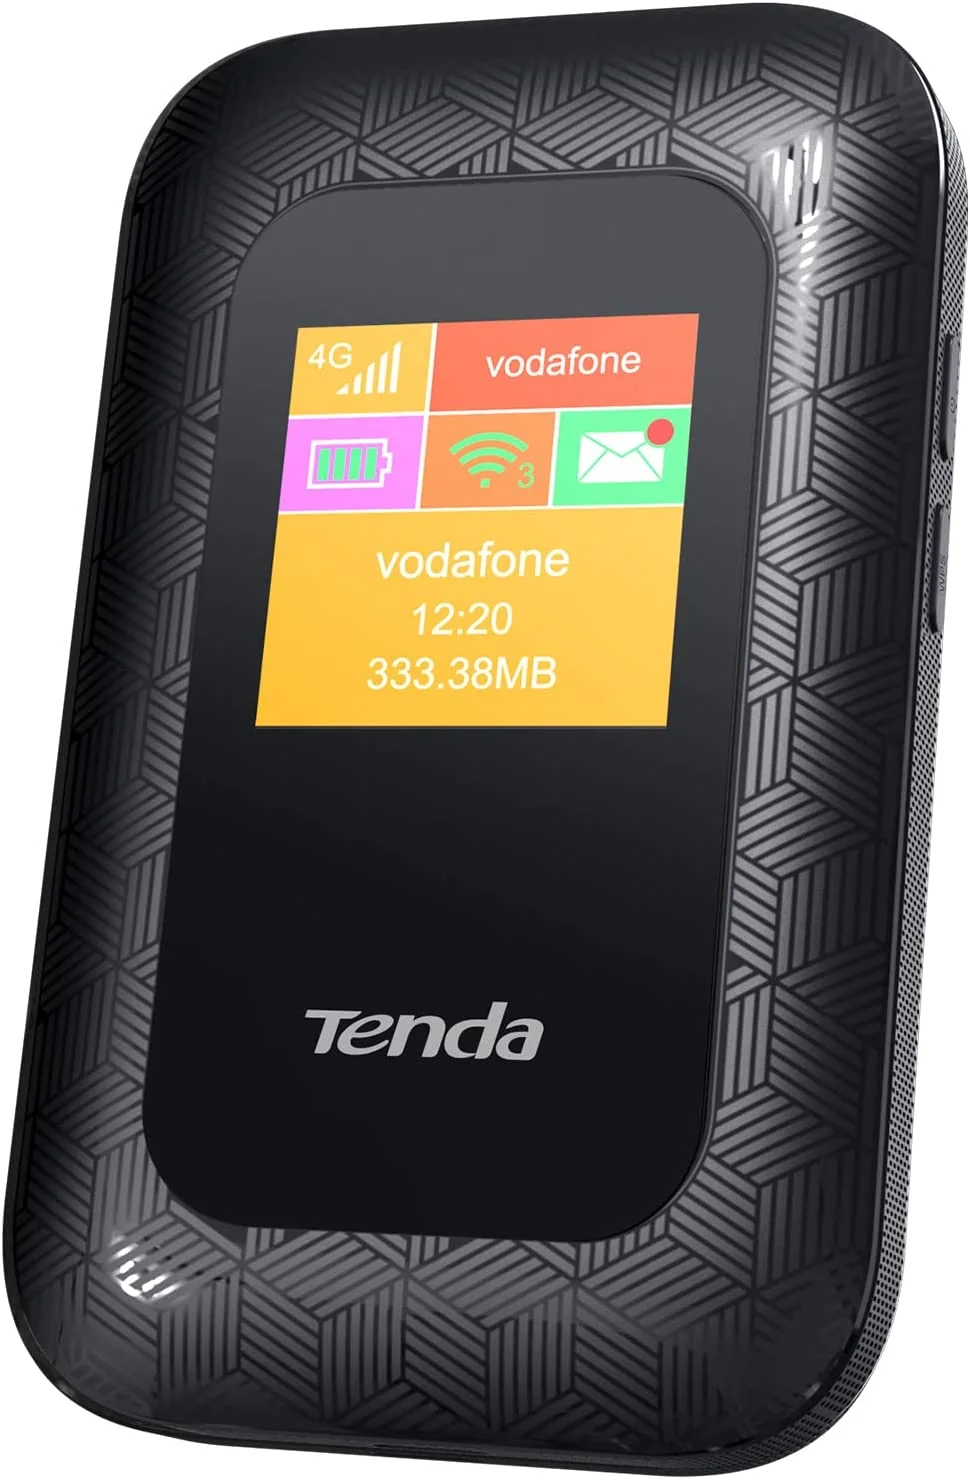 hotspots Wi-Fi Tenda 4G180 - Router 4G móvil V3.0, Wi-Fi MiFi 4G LTE CAT4 150 mbps